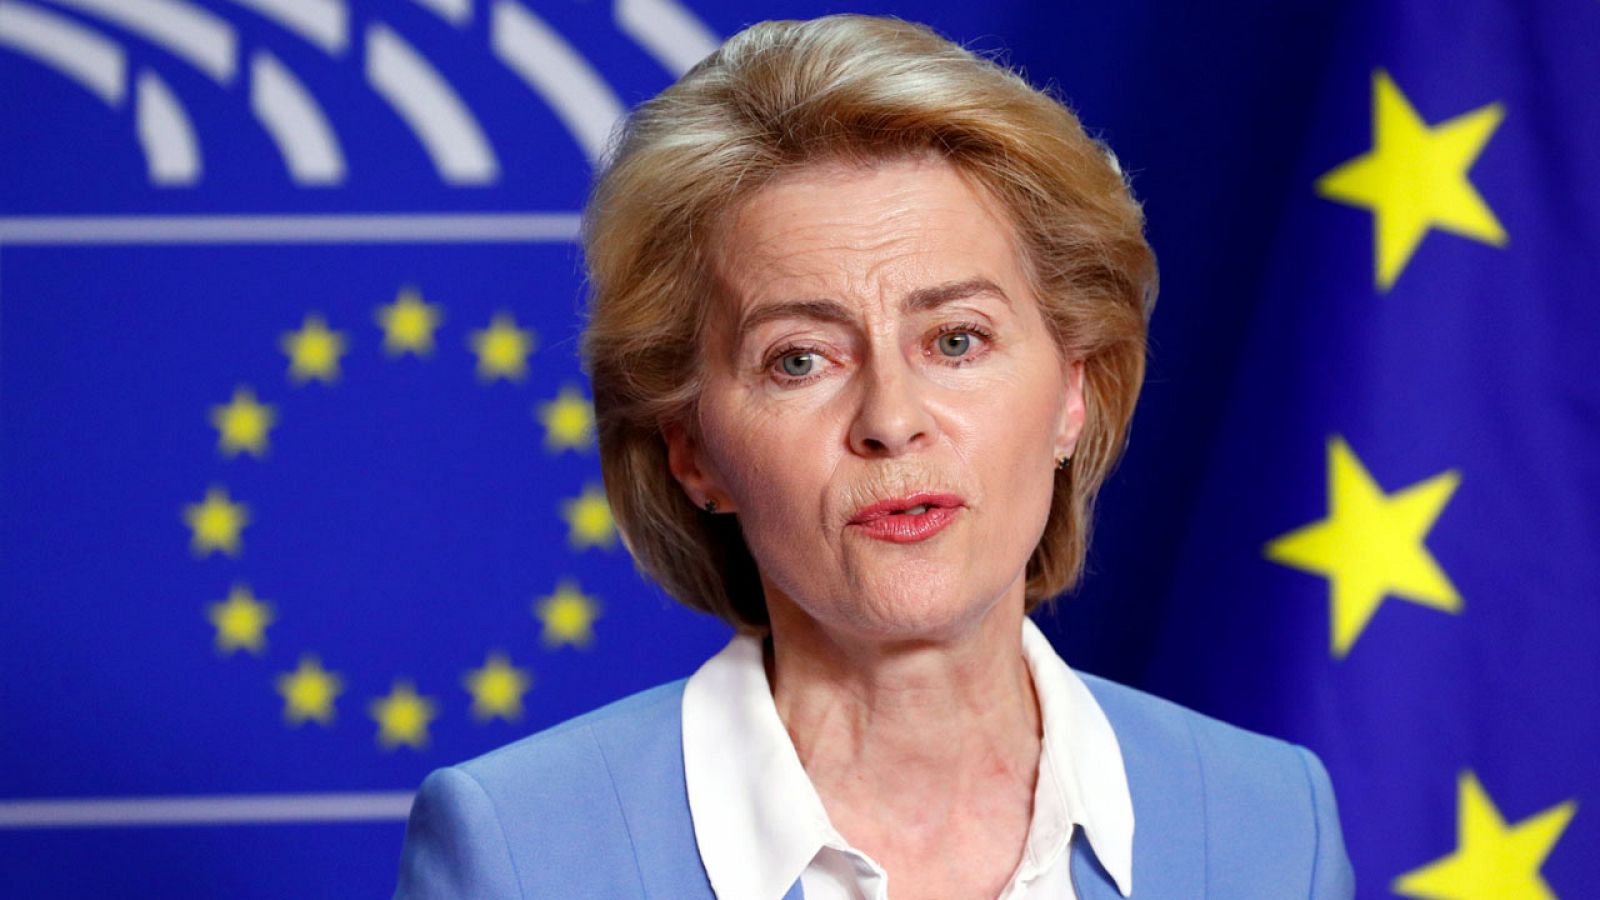 Ursula von der Leyen comparece en rueda de prensa en el Parlamento Europeo